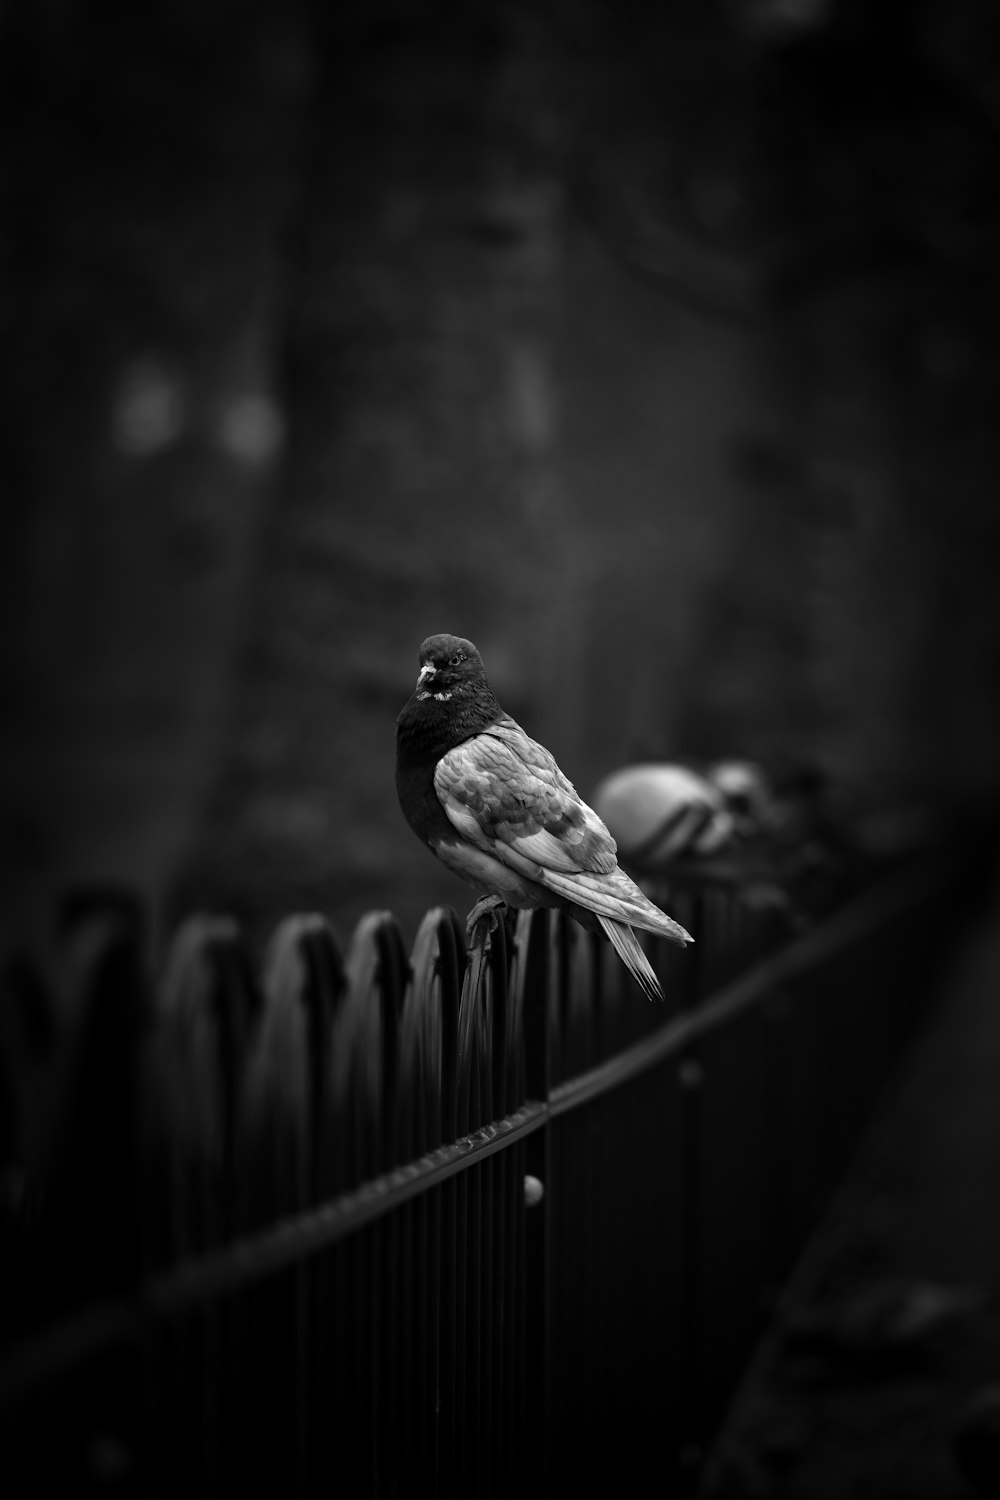 foto em tons de cinza do pombo na cerca preta